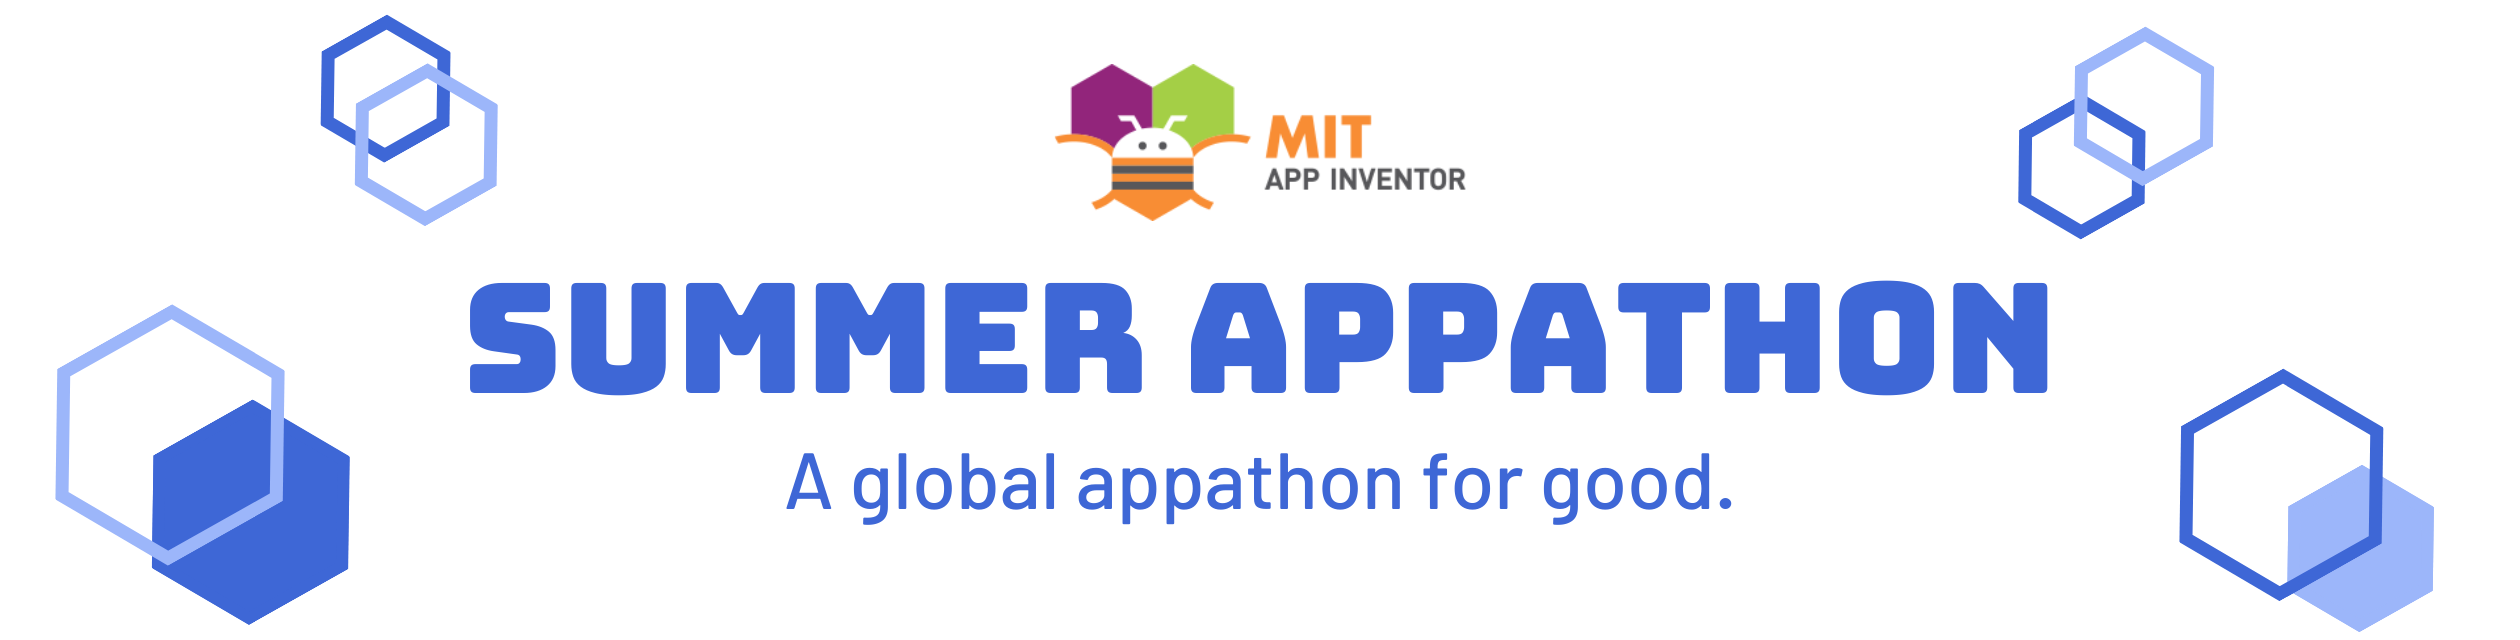 MIT App Inventor Summer Appathon